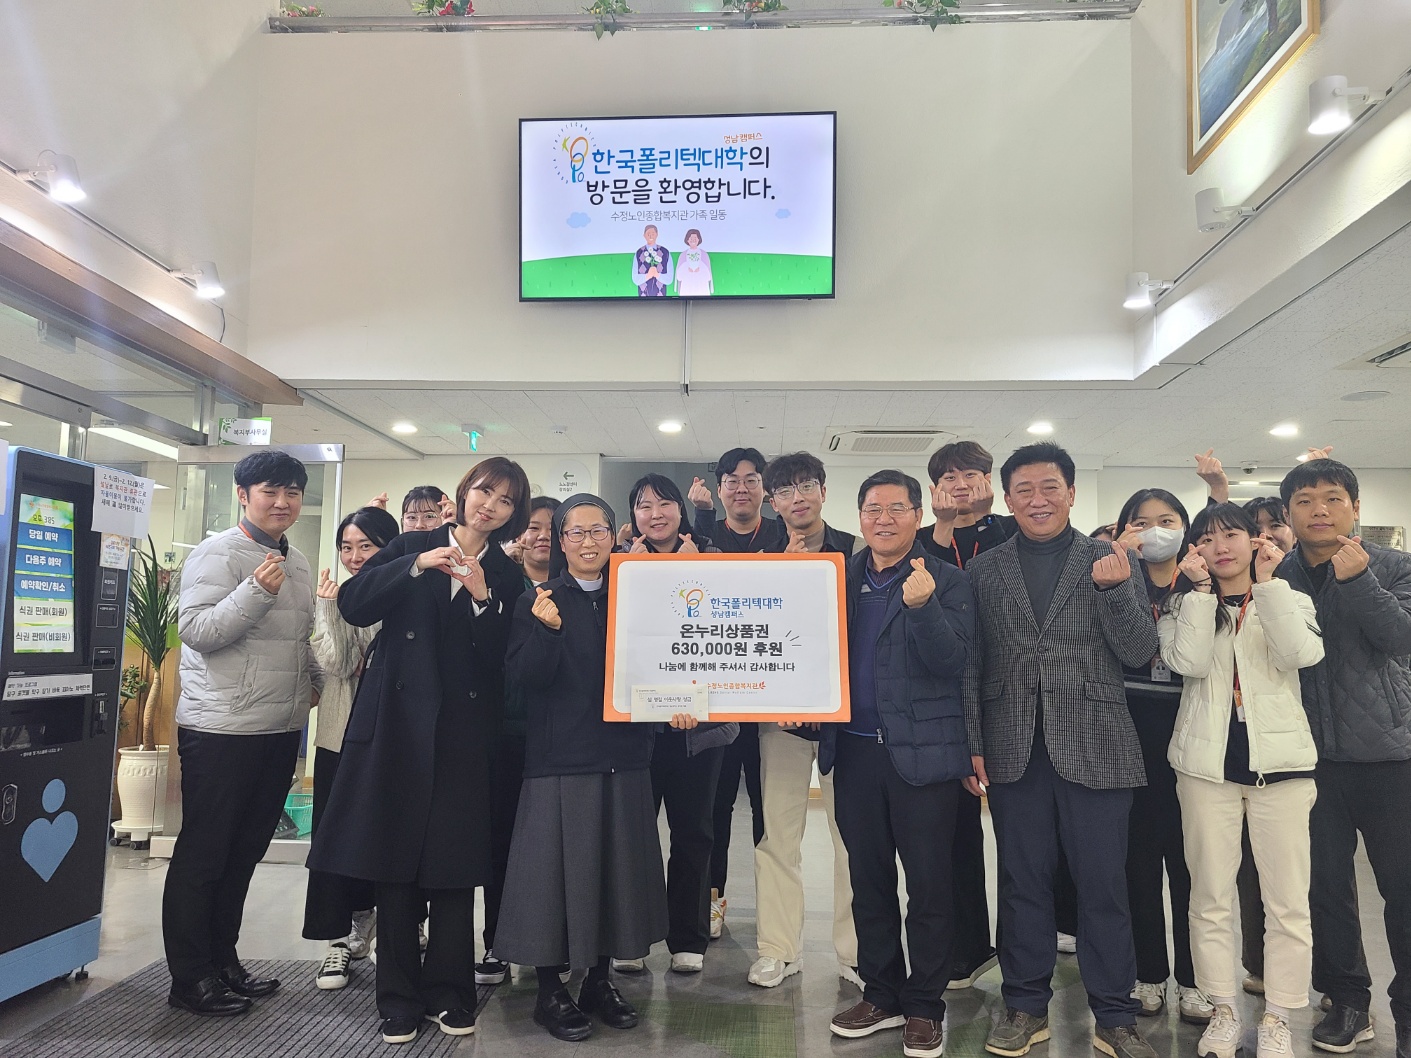 한국폴리텍대학 성남캠퍼스에서 온누리상품권 630,000원을 후원해 주셨습니다!